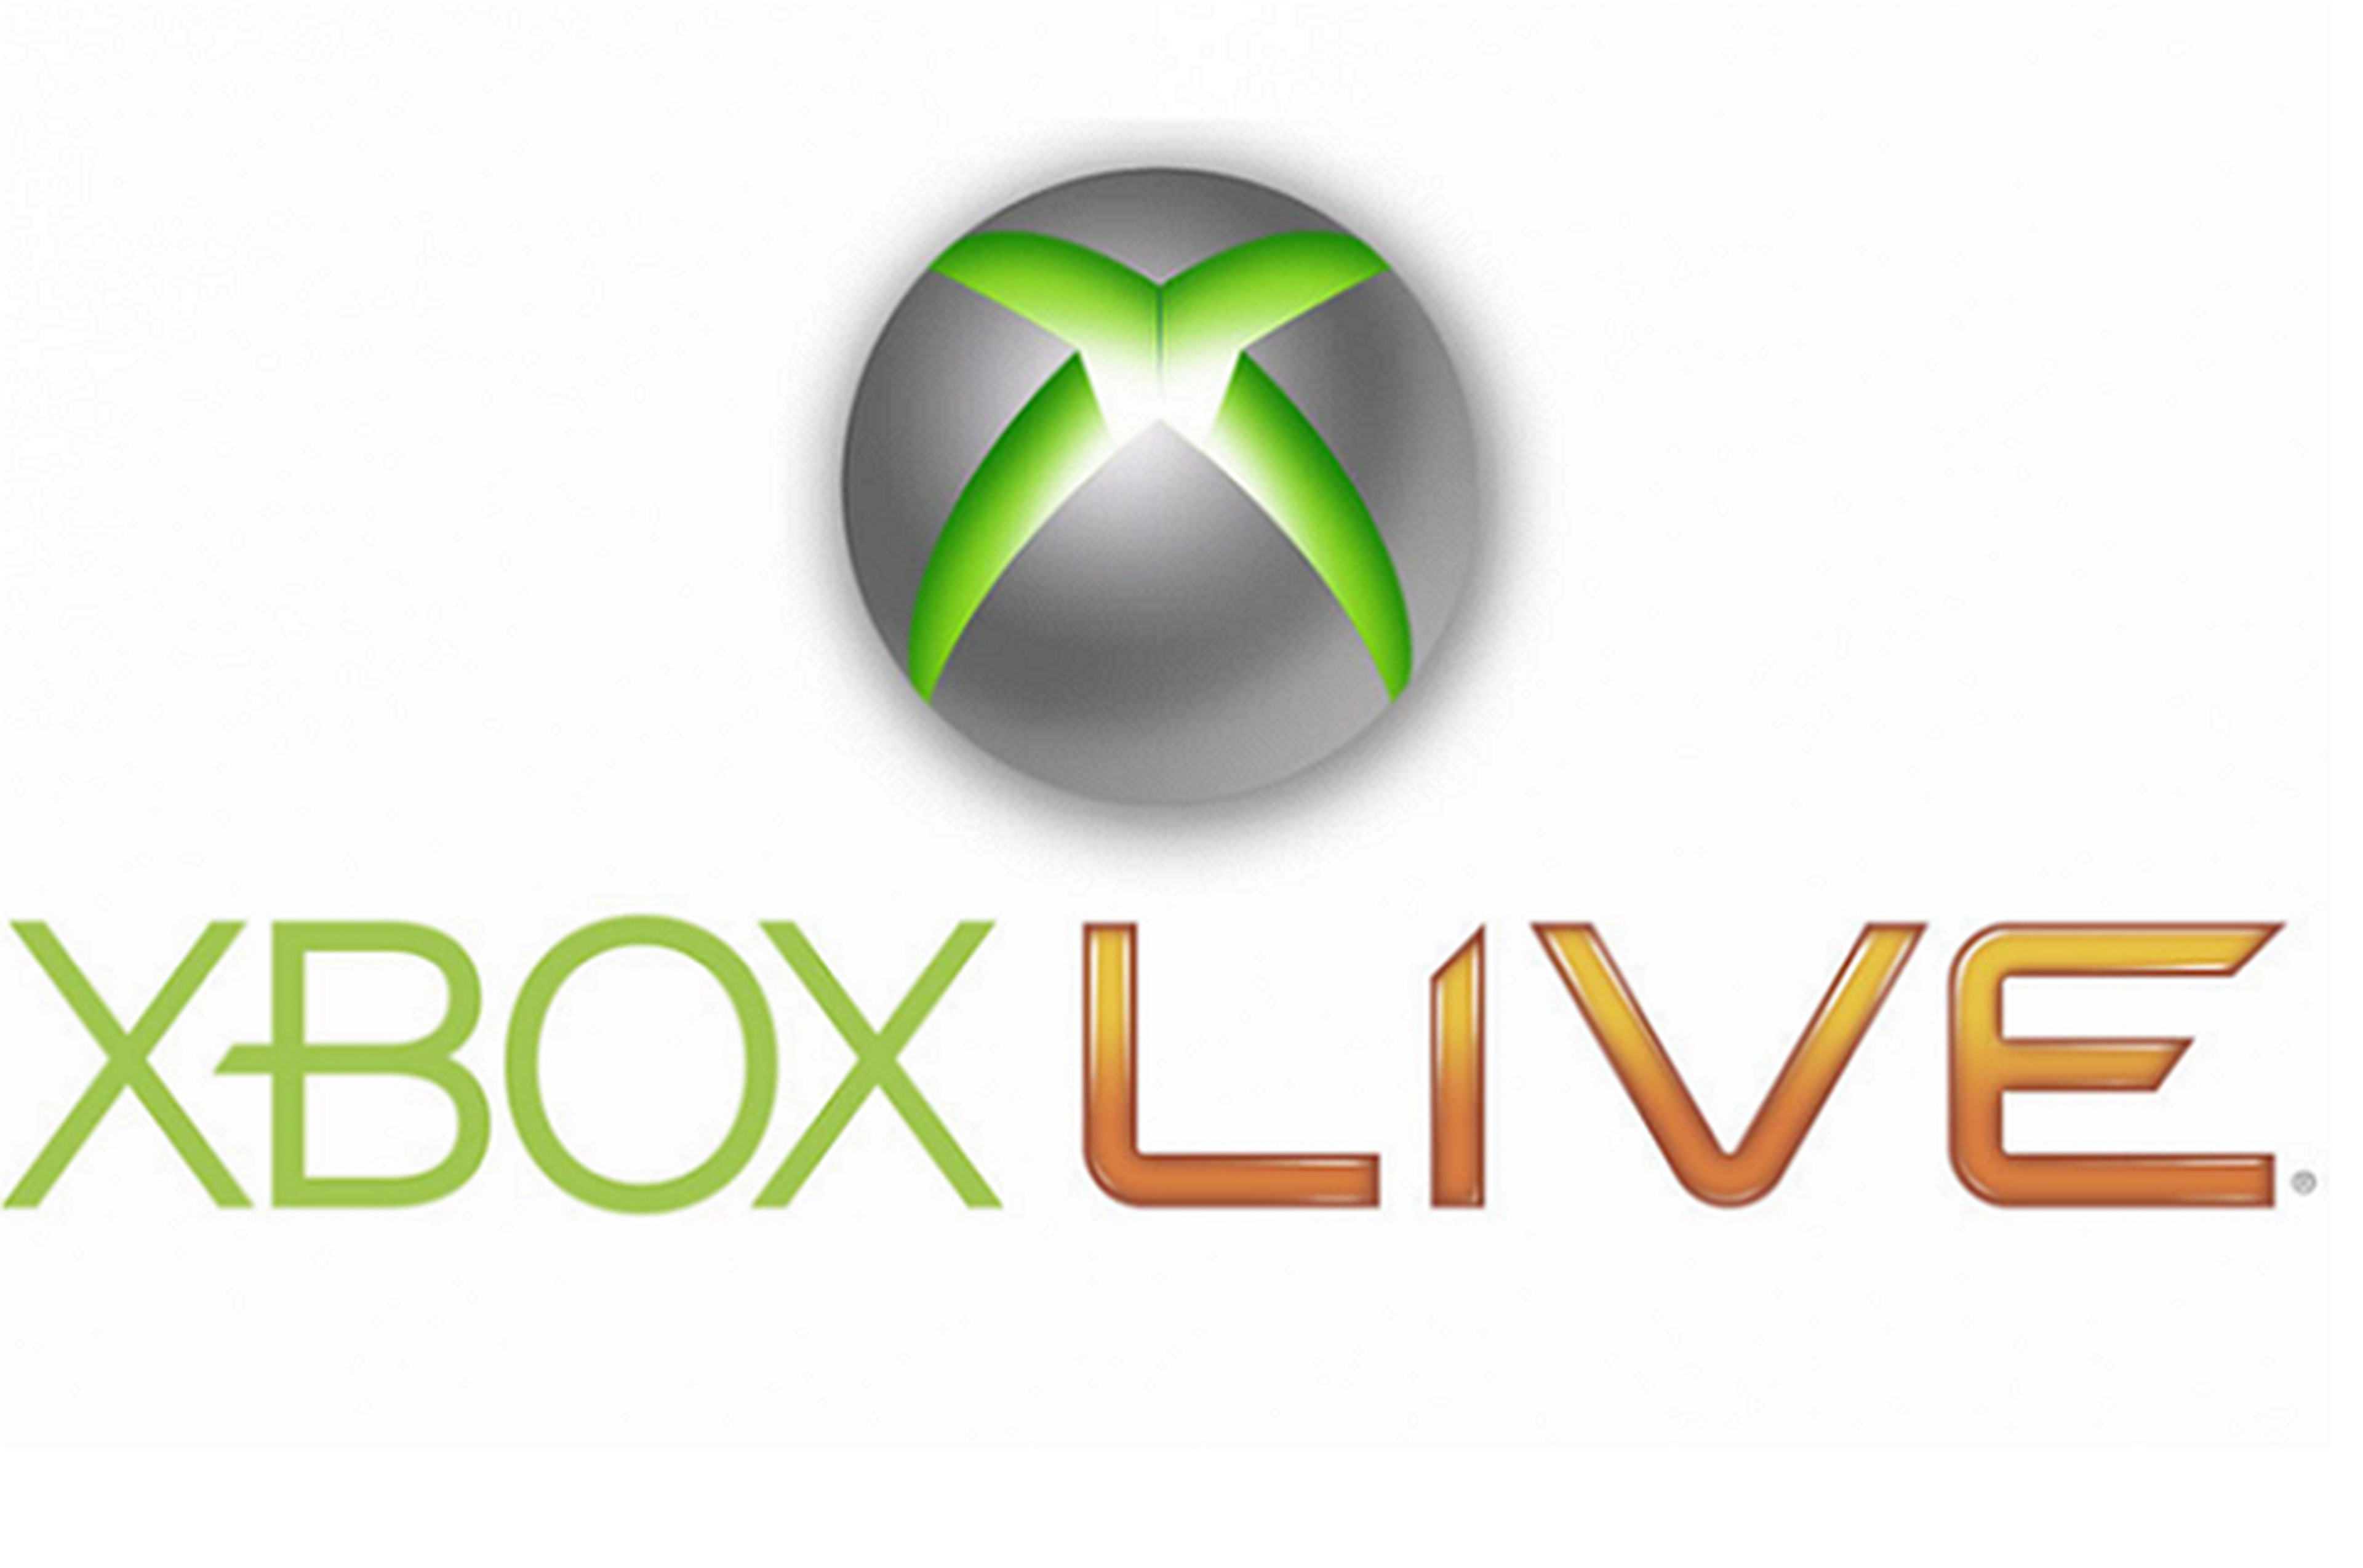 Xbox live games. Xbox Live. Иксбокс лайв. Хбокс лого. Xbox Live Gold logo.